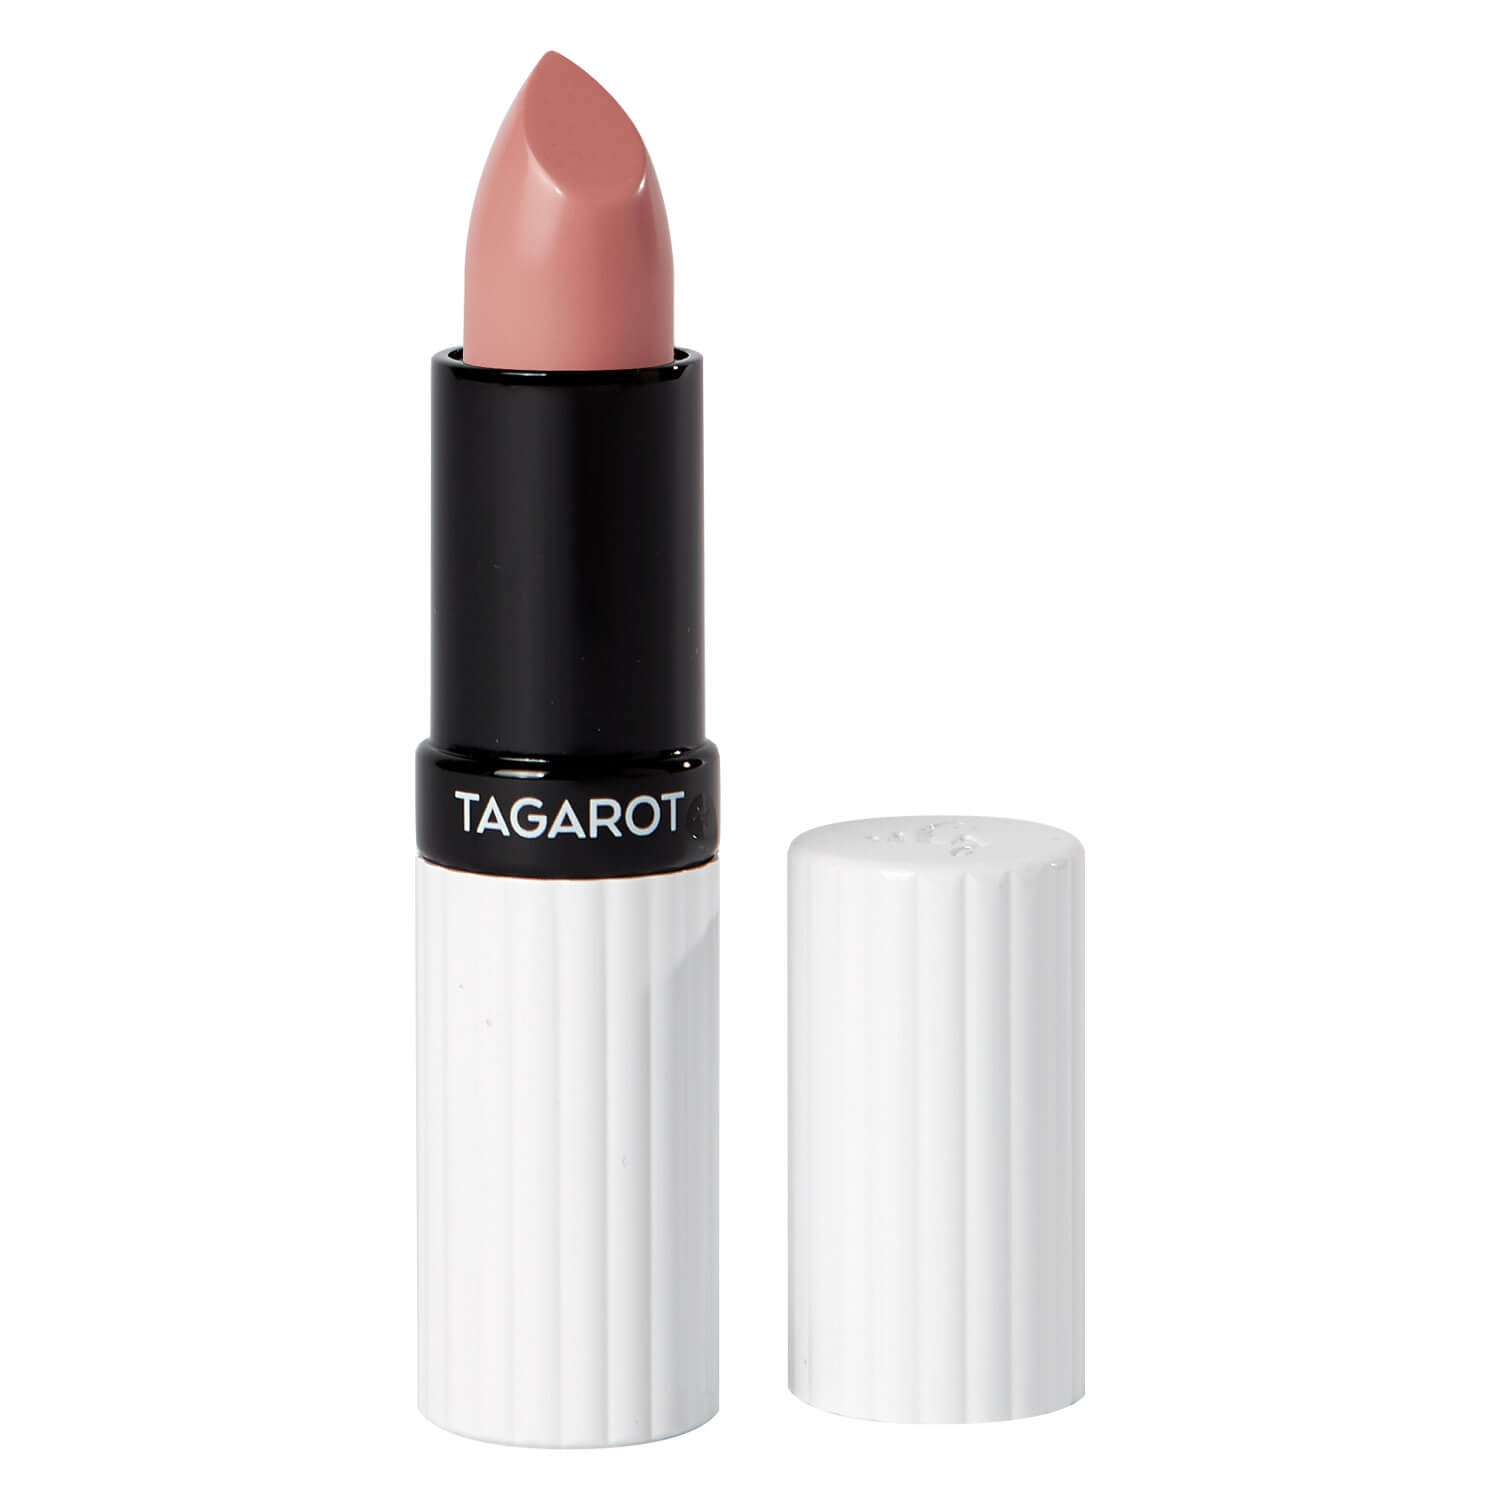 Produktbild von UND GRETEL Lips - TAGAROT VEGAN Lipstick by Marlene Powder Rose 12